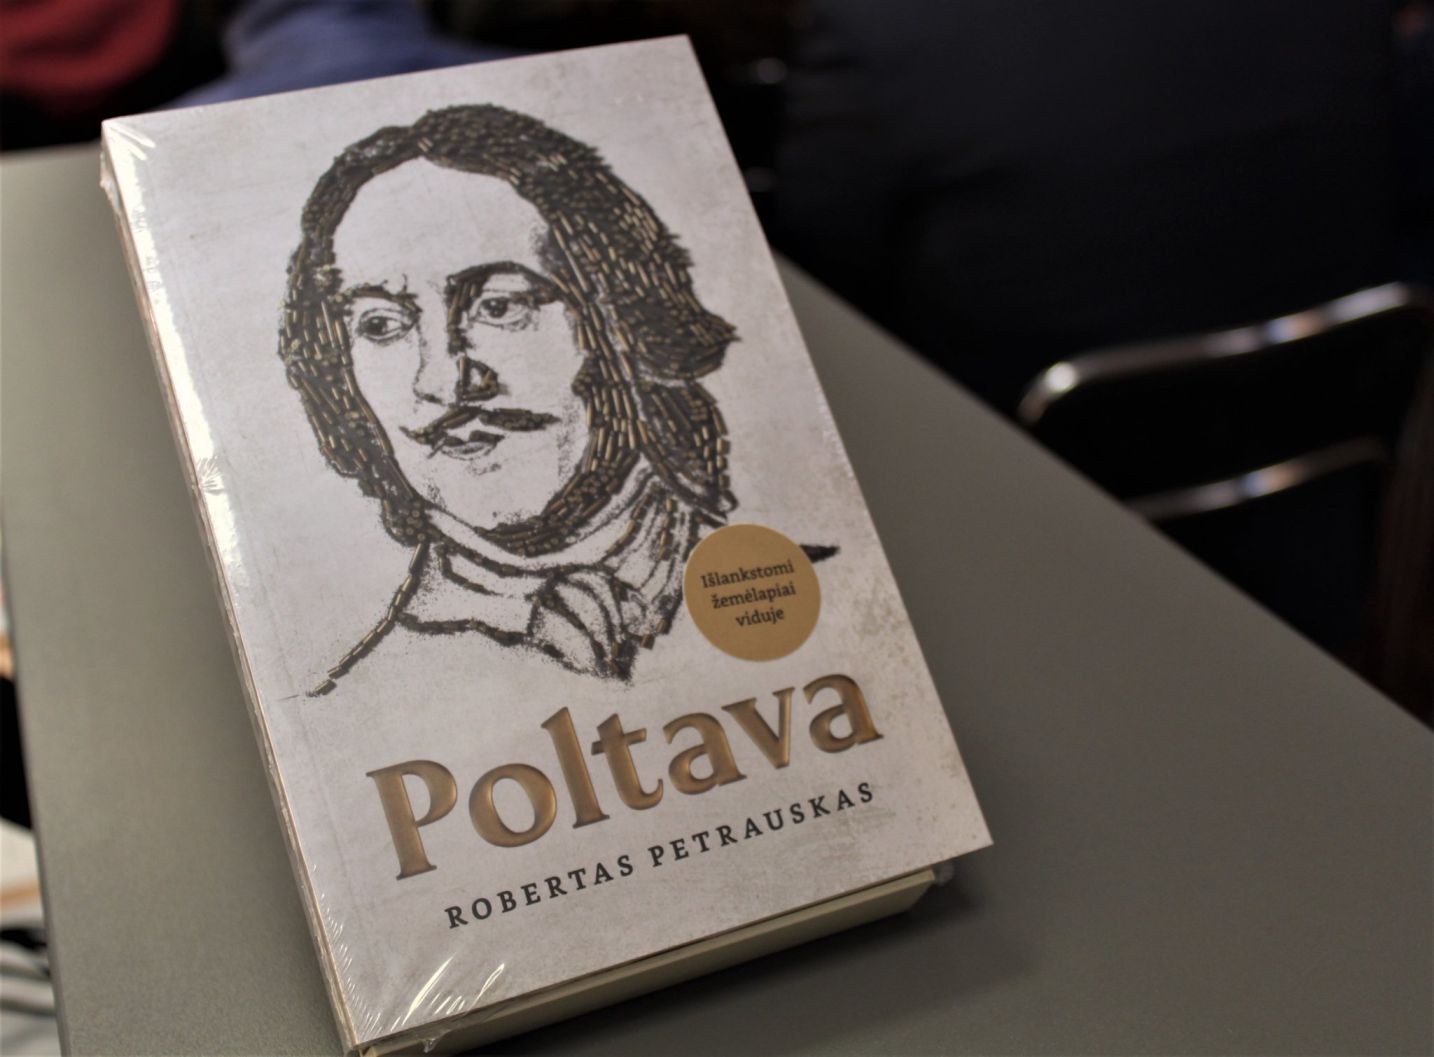 Roberto Petrausko knygos „Poltava“ pristatymas